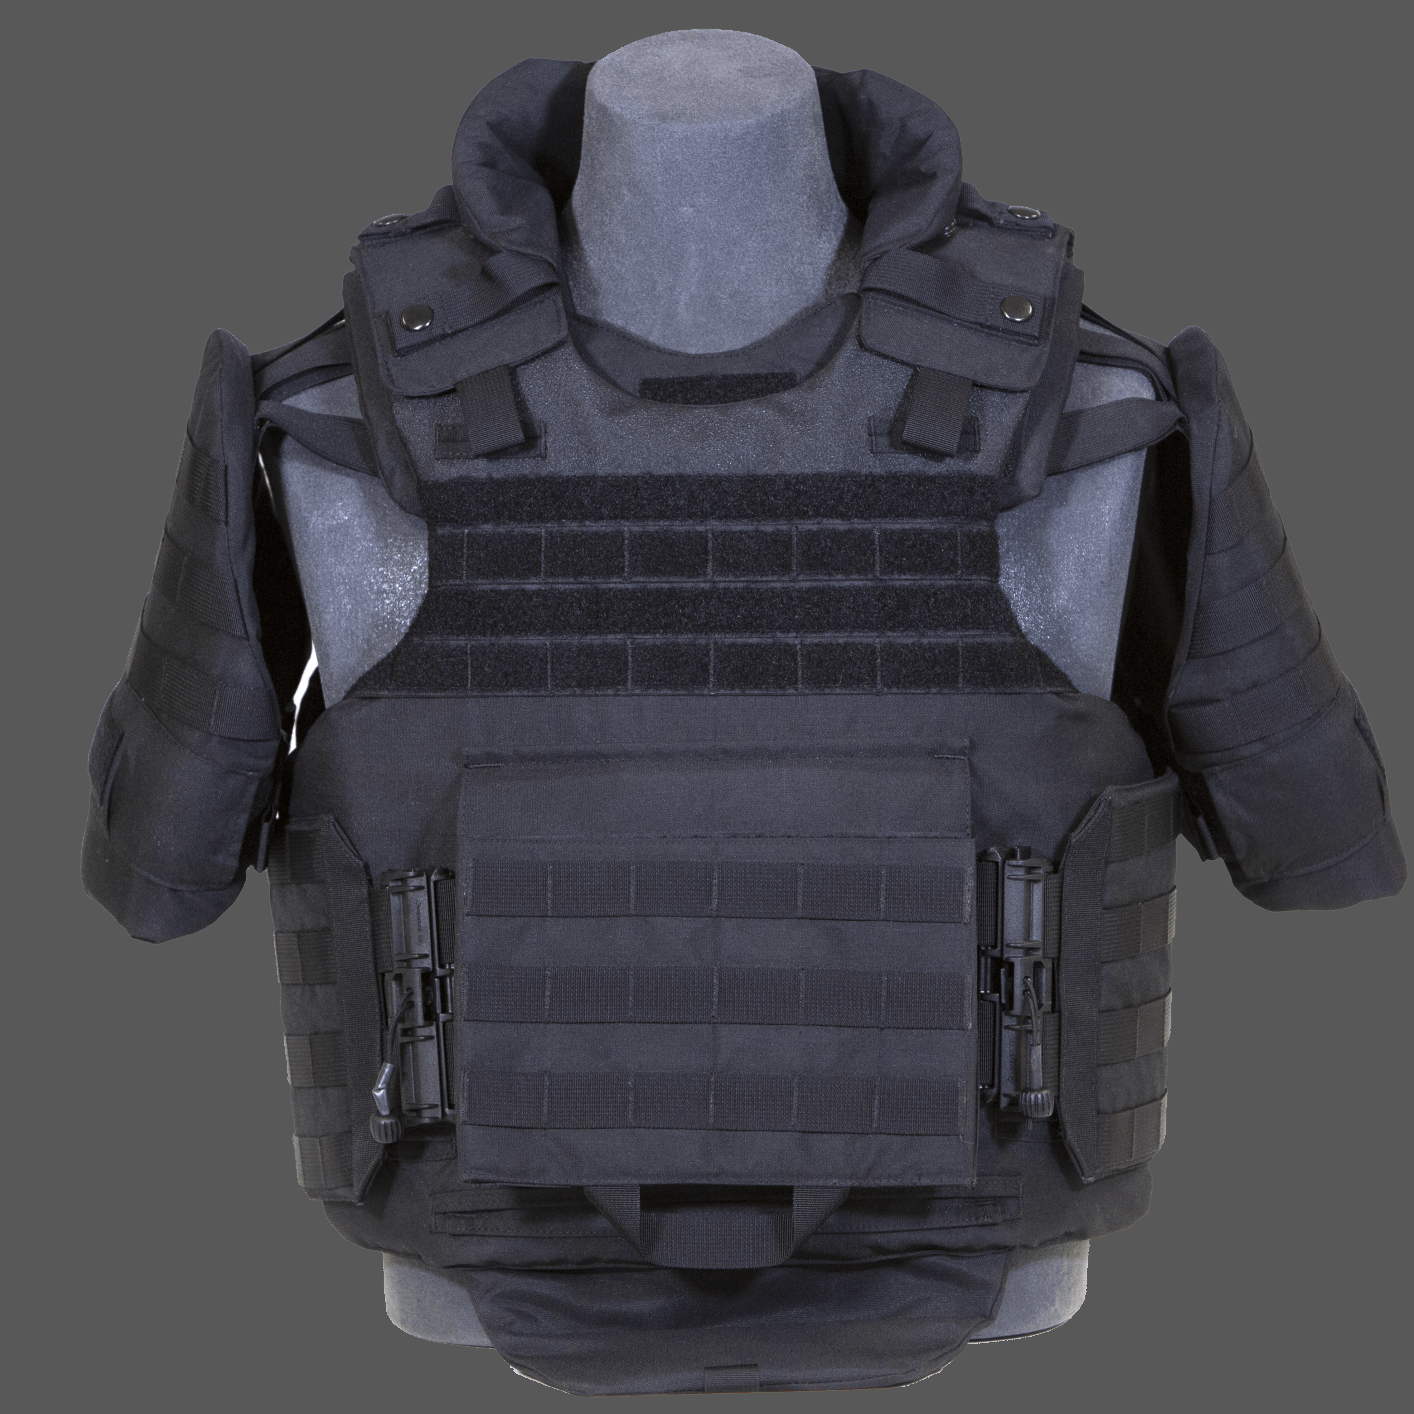 5.11 Tactical VTAC LBE Tactical Vest Black - 58631.019 - TACWRK